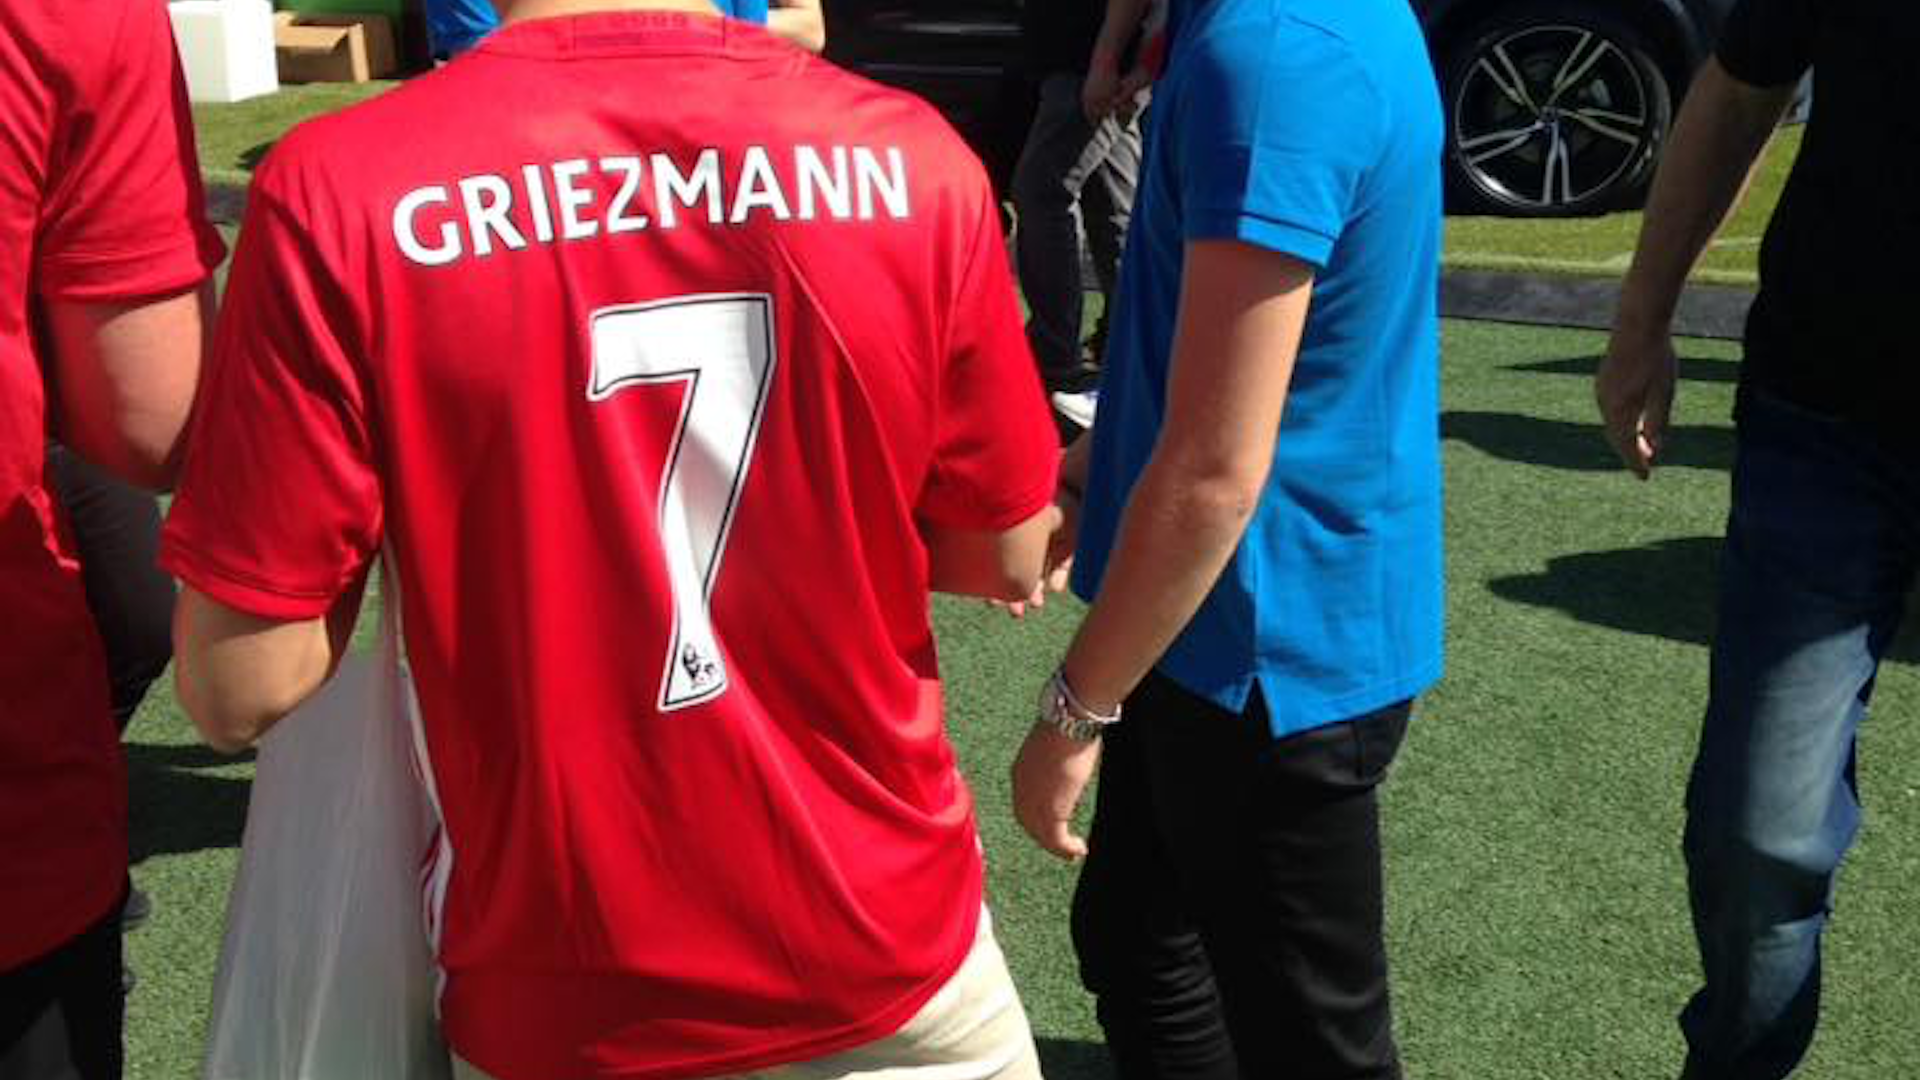 Griezmann camiseta Manchester United